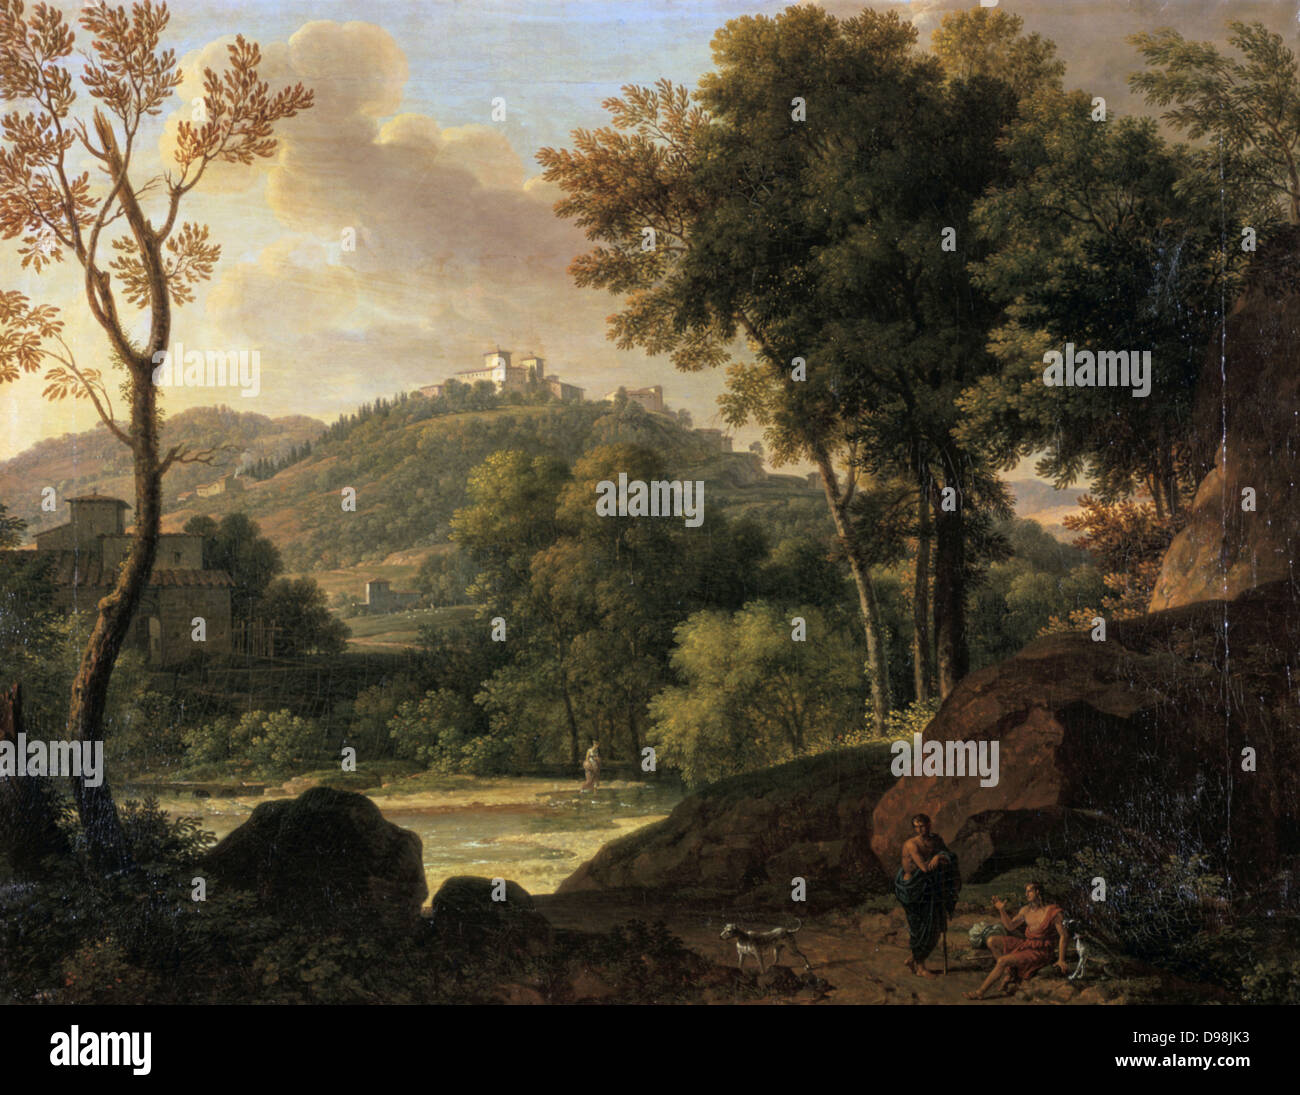 Umgebung von Florenz', Gemälde von Francois Xavier, Baron Fabre (1766-1837), französischer Künstler. Stream läuft, bewaldeten Landschaft durch Landschaft mit Hügeln und Villen. Zahlen mit Hunden in den felsigen Vordergrund. Stockfoto